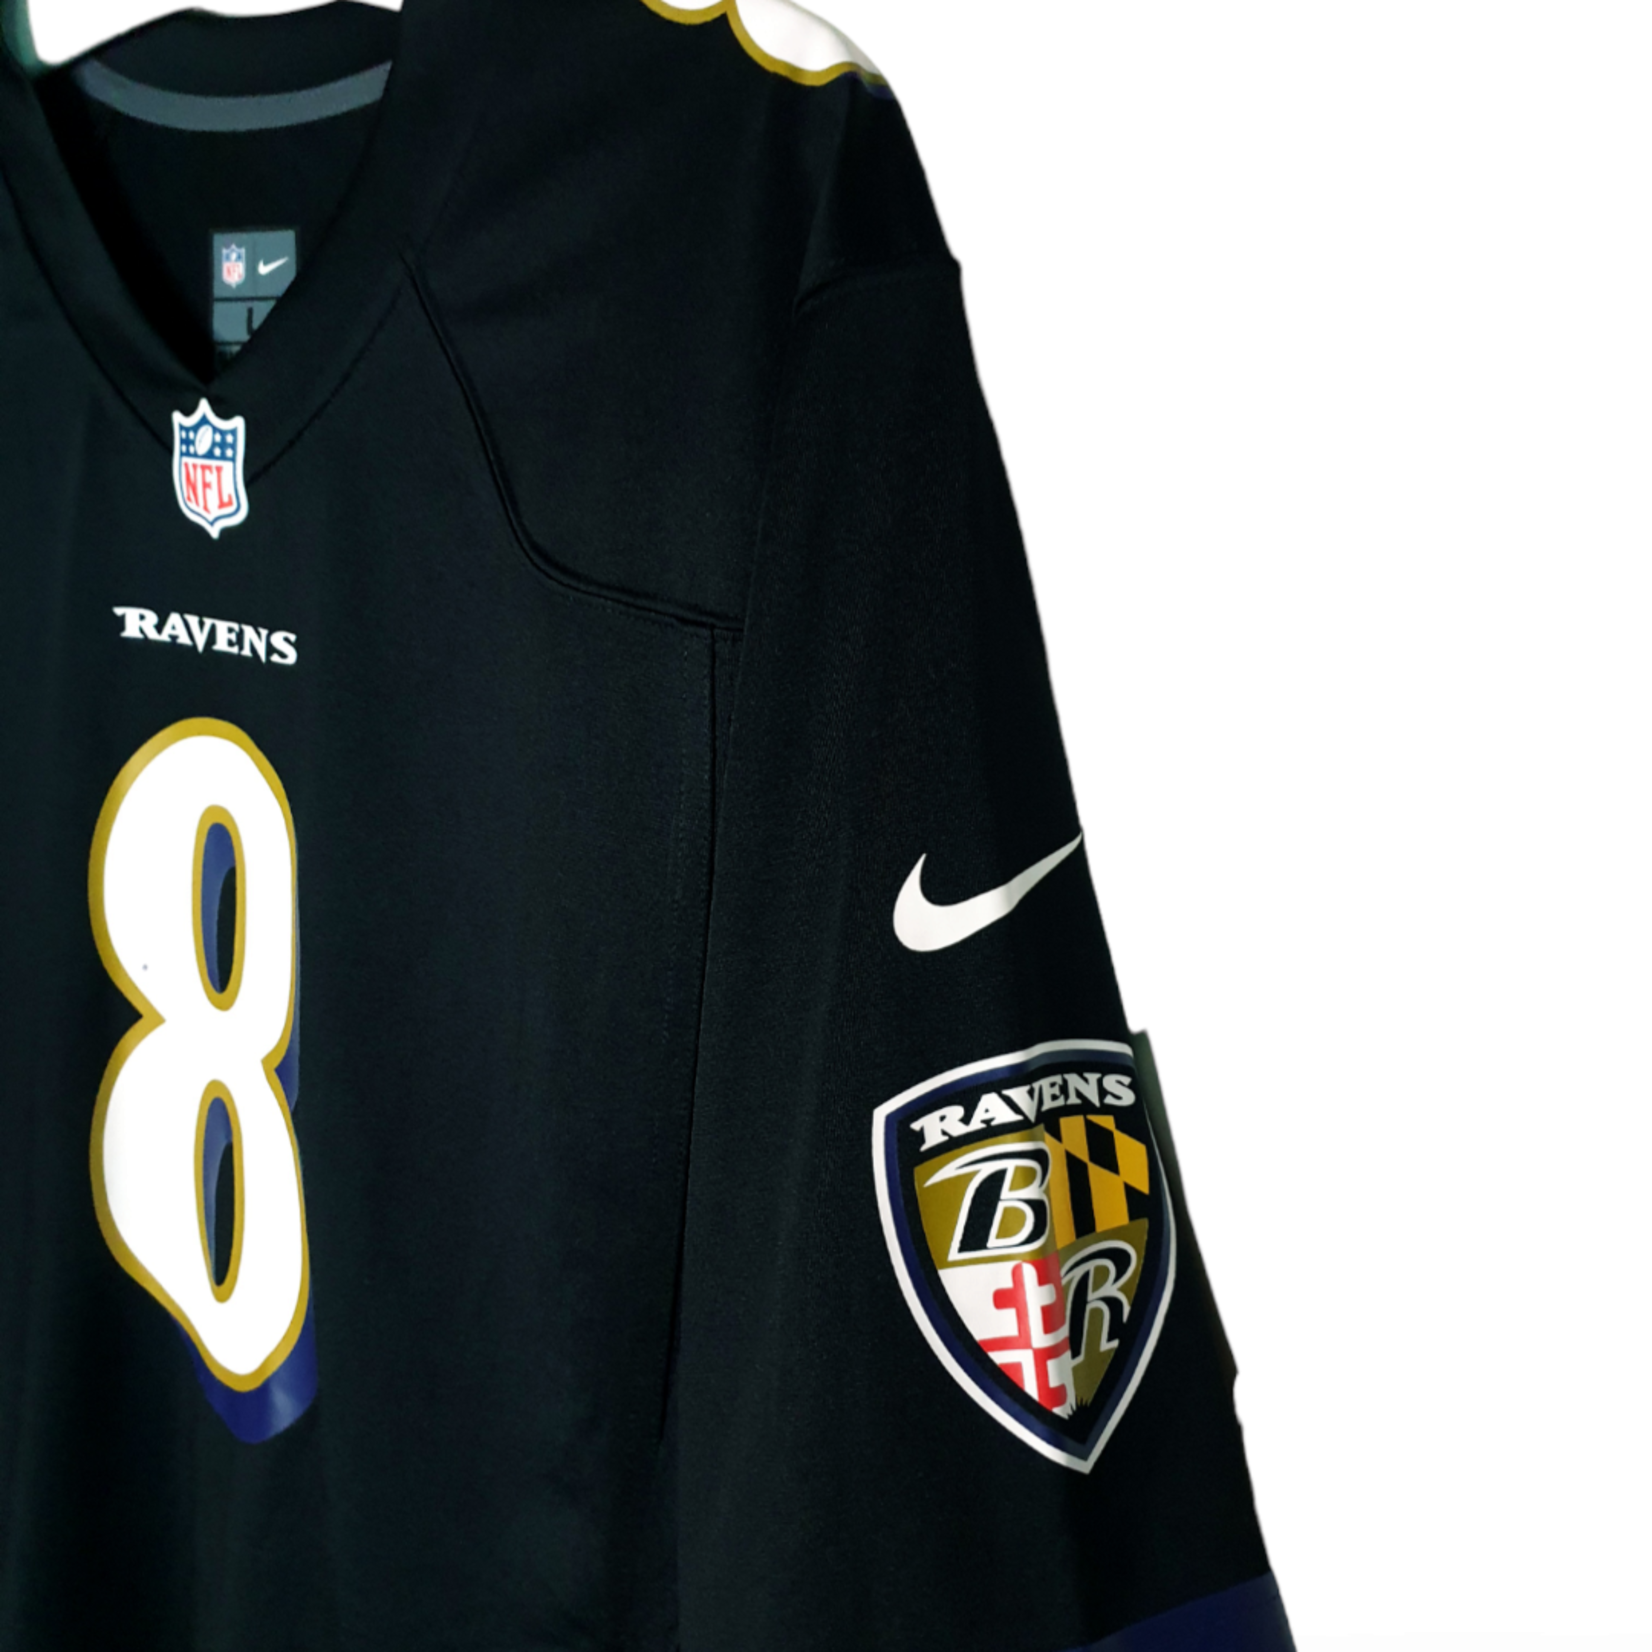 Nike Origineel Nike vintage NFL shirt Baltimore Ravens #8 Lamar Jackson